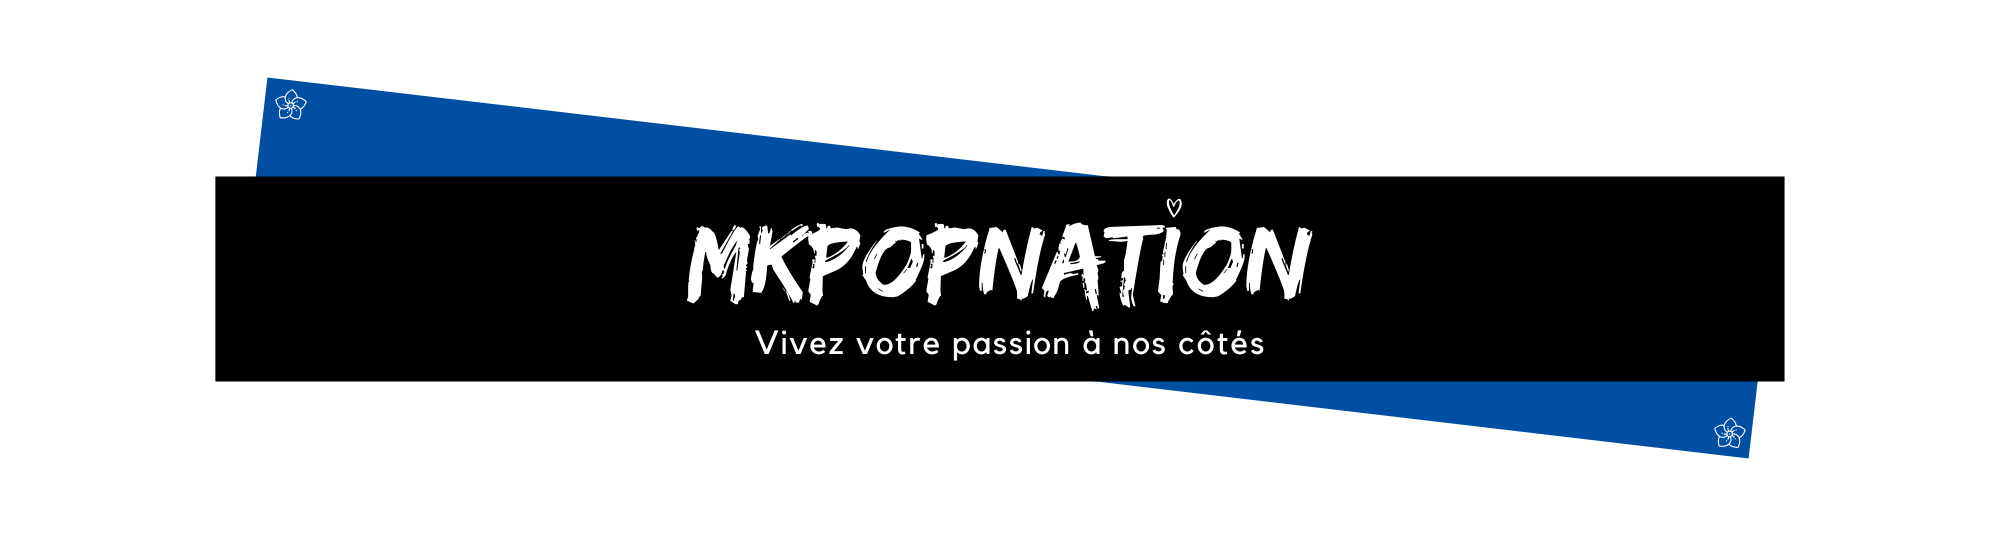 Bannière Mkpopnation : vivez votre passion à nos côtés 